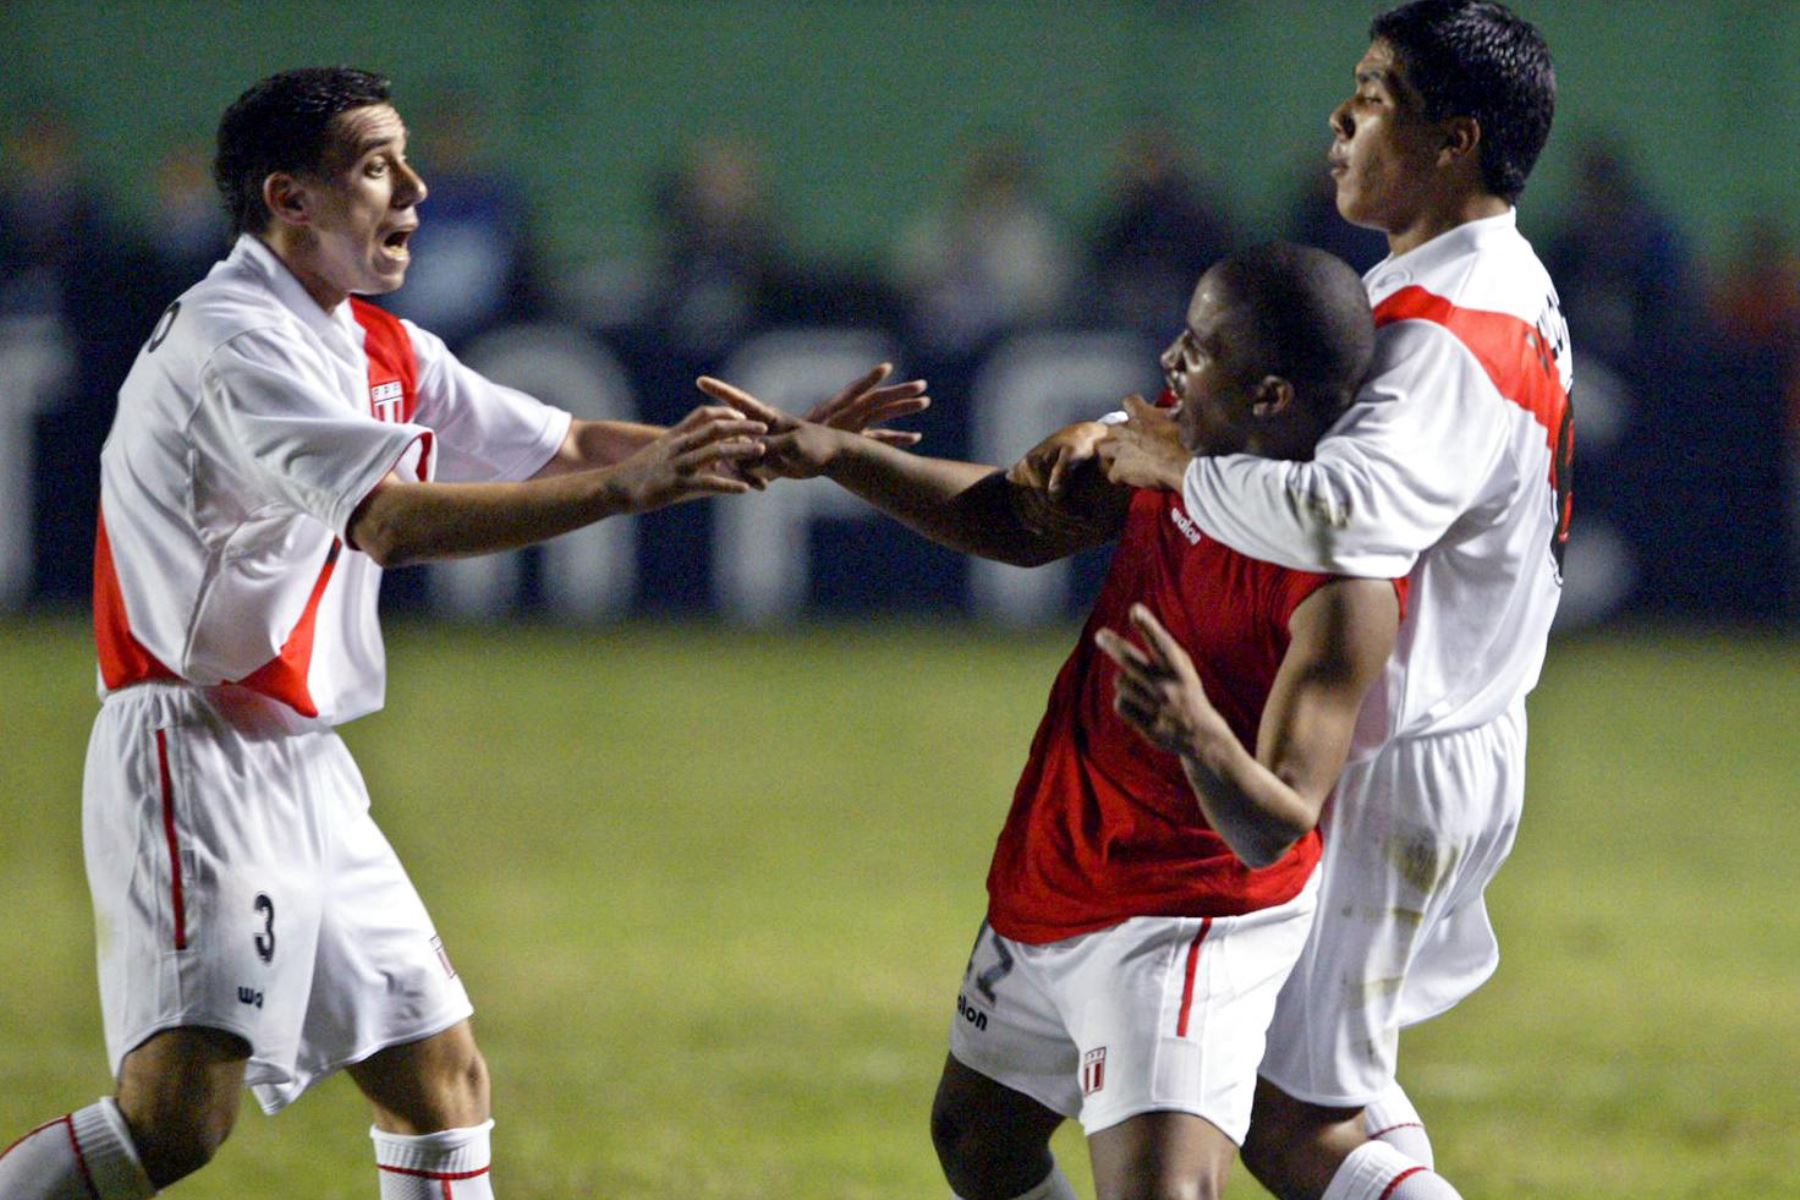 El peruano Jefferson Farfán (C), celebra su gol contra Venezuela con sus compañeros Walter Vilchez (R) y Miguel Rebossio, el 09 de julio de 2004, durante un partido del Grupo A de la Copa América celebrado en el Estadio Nacional de Lima, Perú.
Foto : AFP